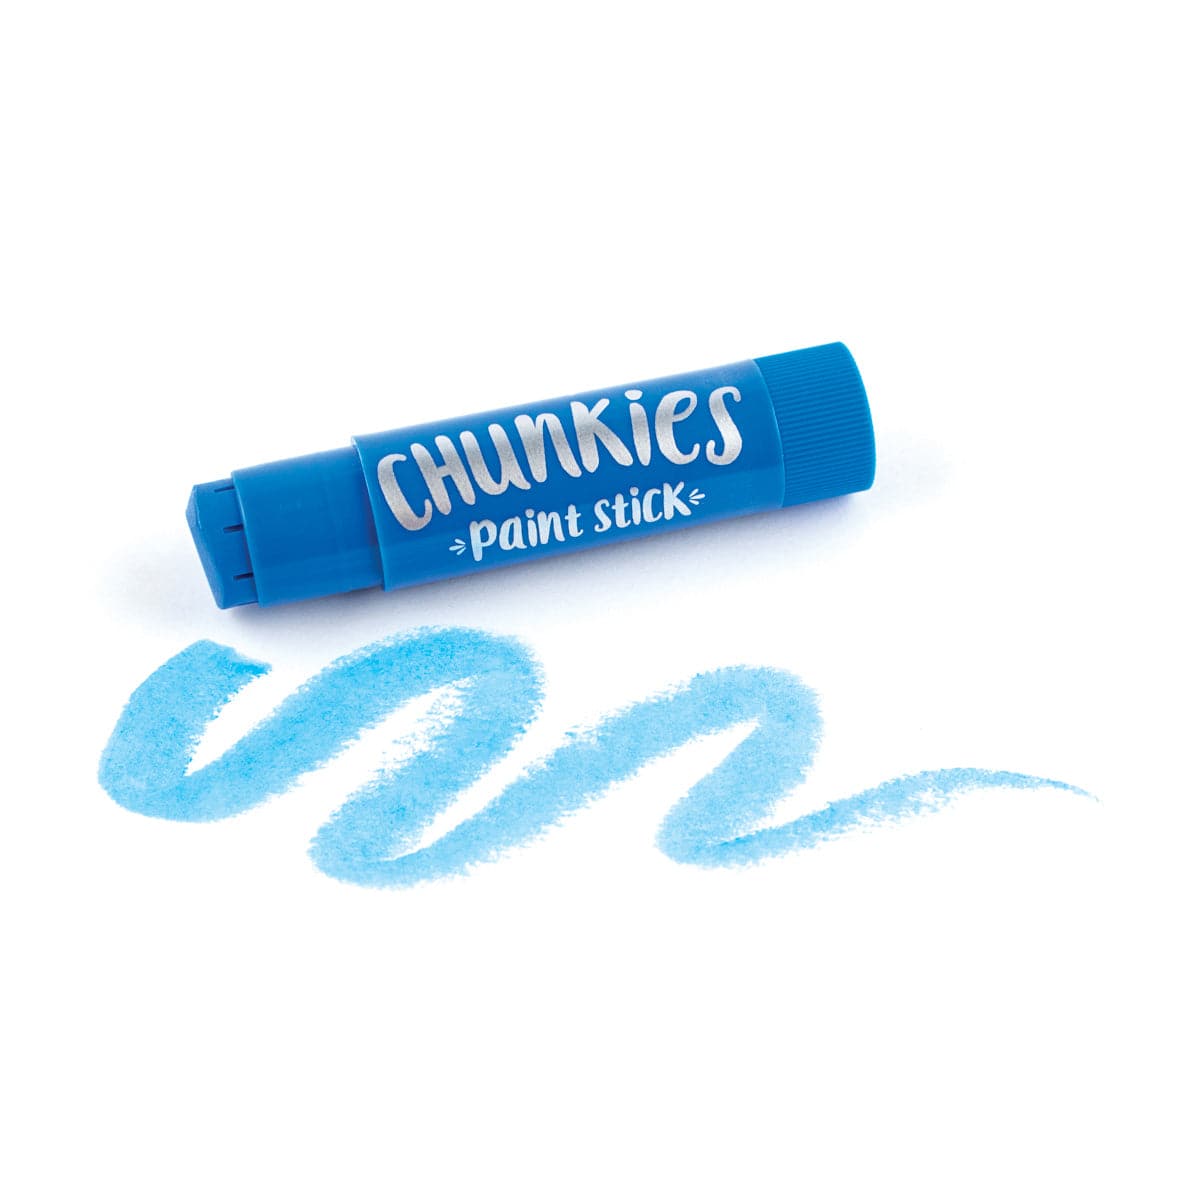 Chunkies Paint Sticks - Pastel - Set of 6 - OOLY